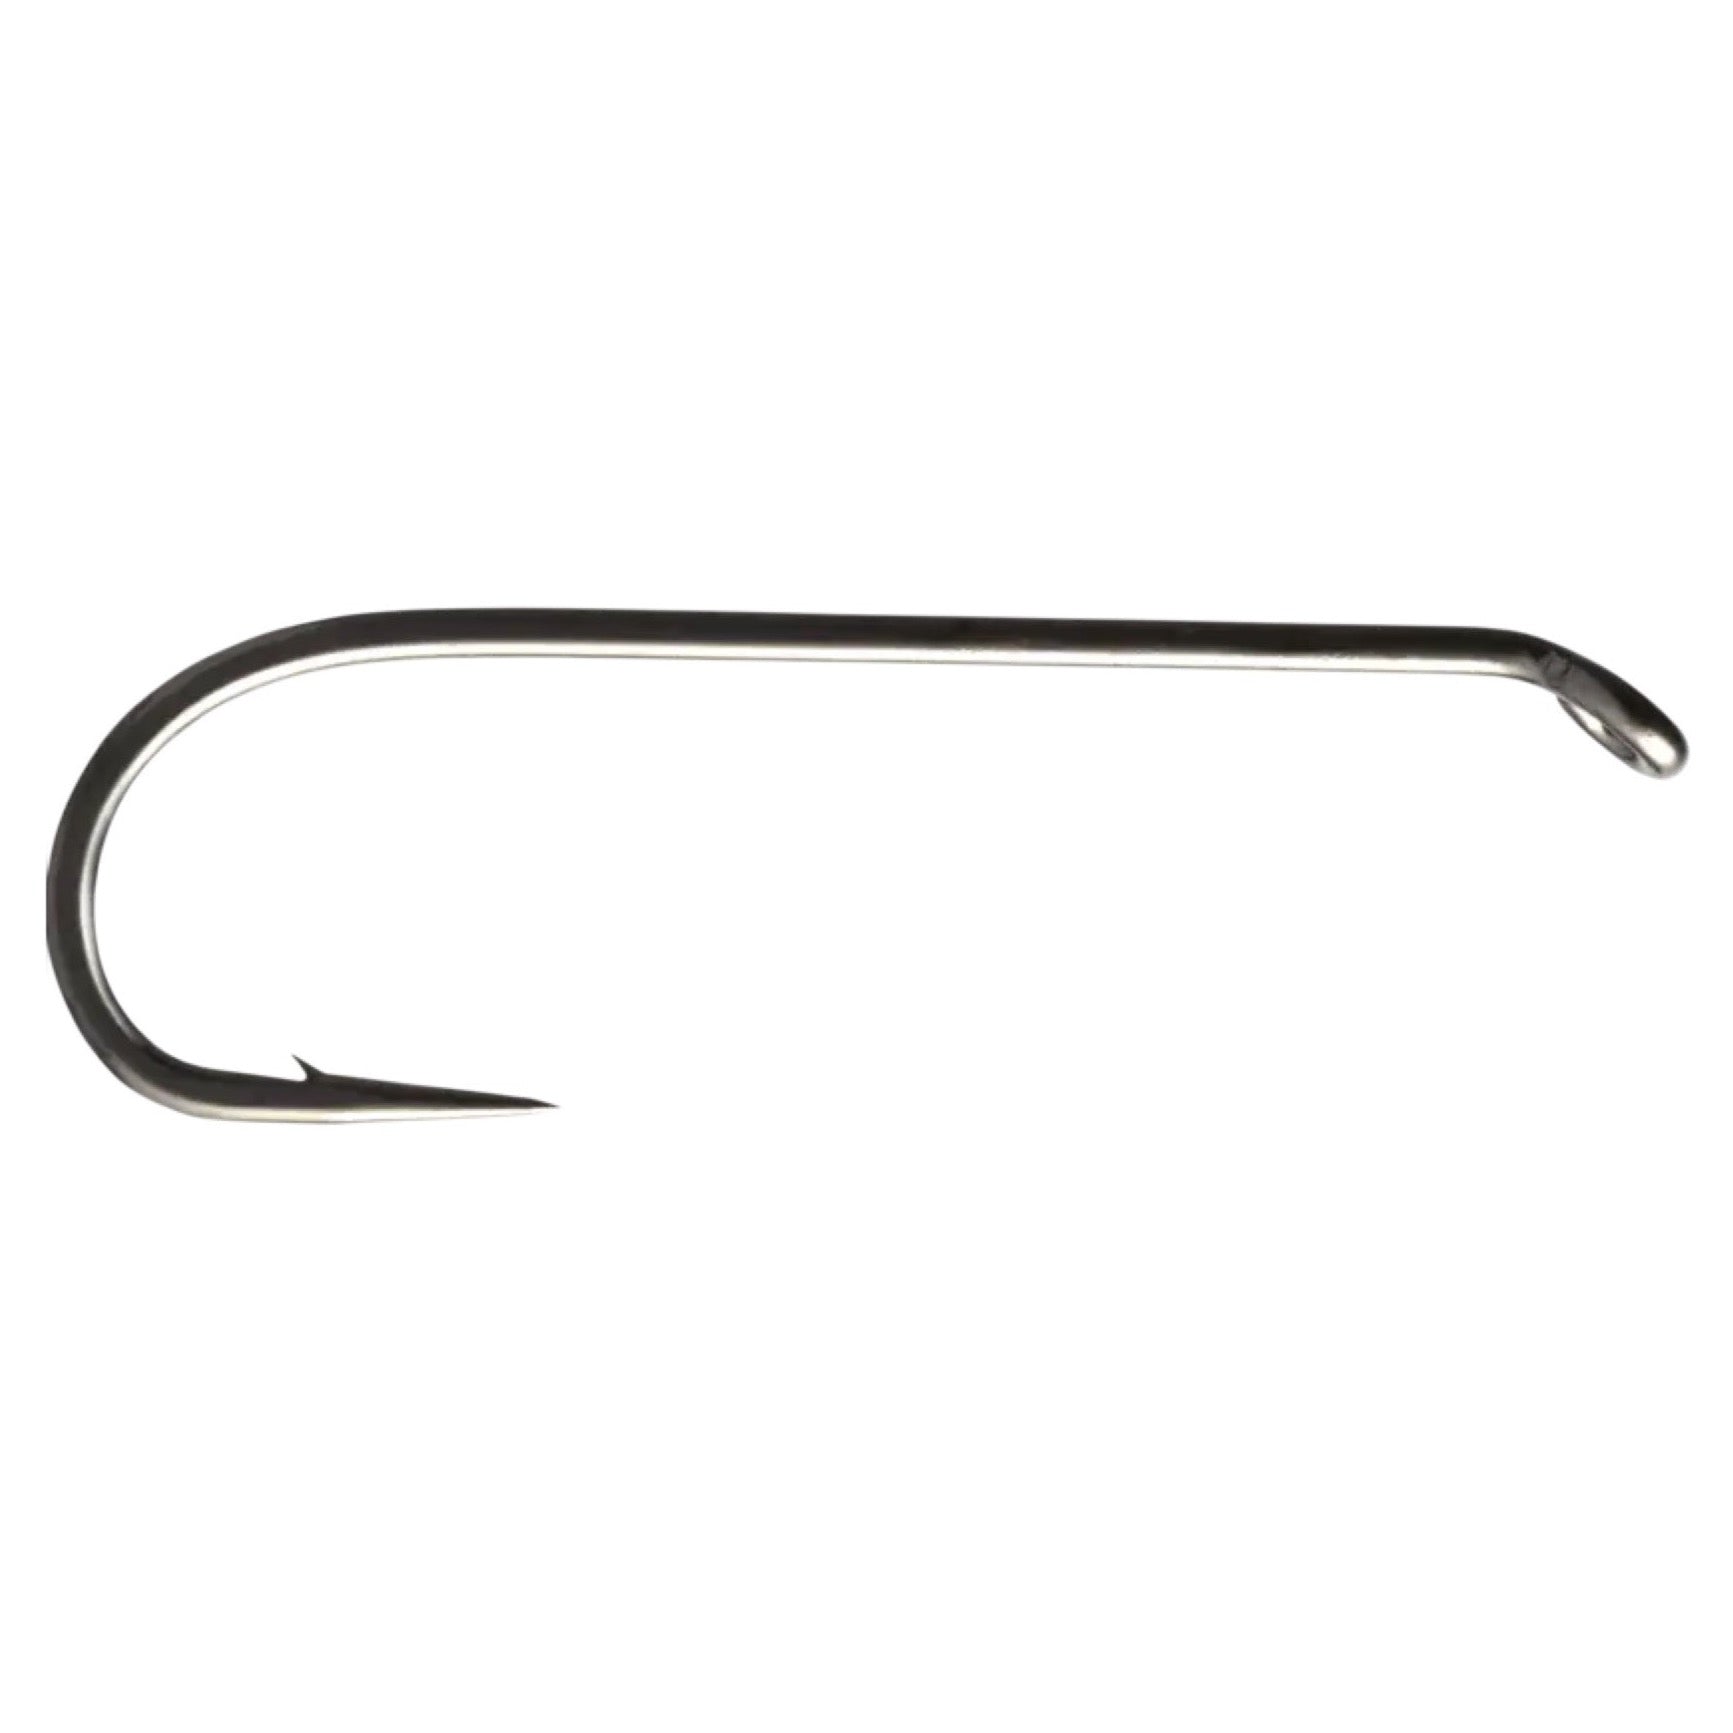 Mustad Signature Streamer Hook R73-9671 10